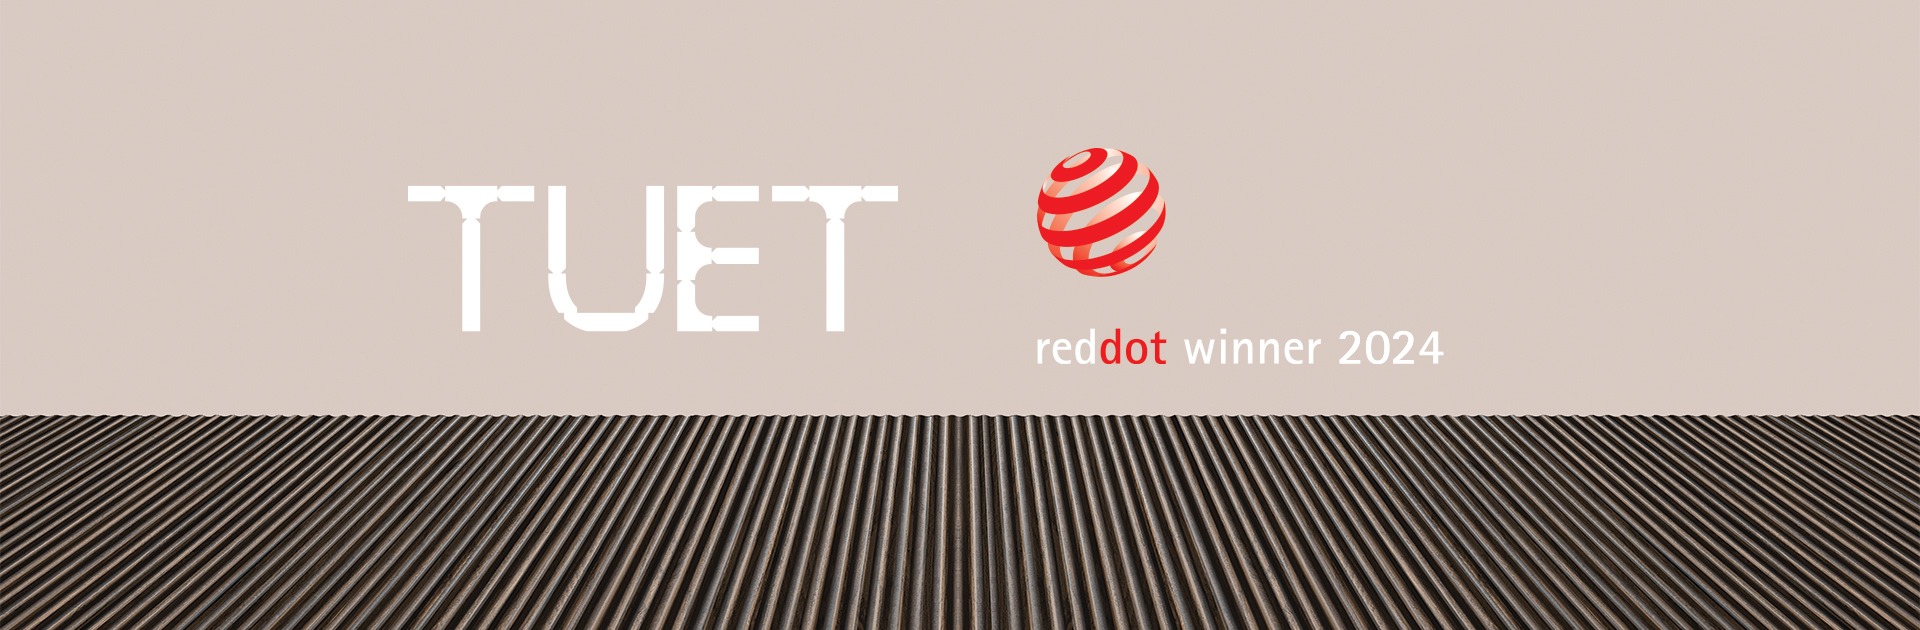 Tuet wint Red Dot Award 2024